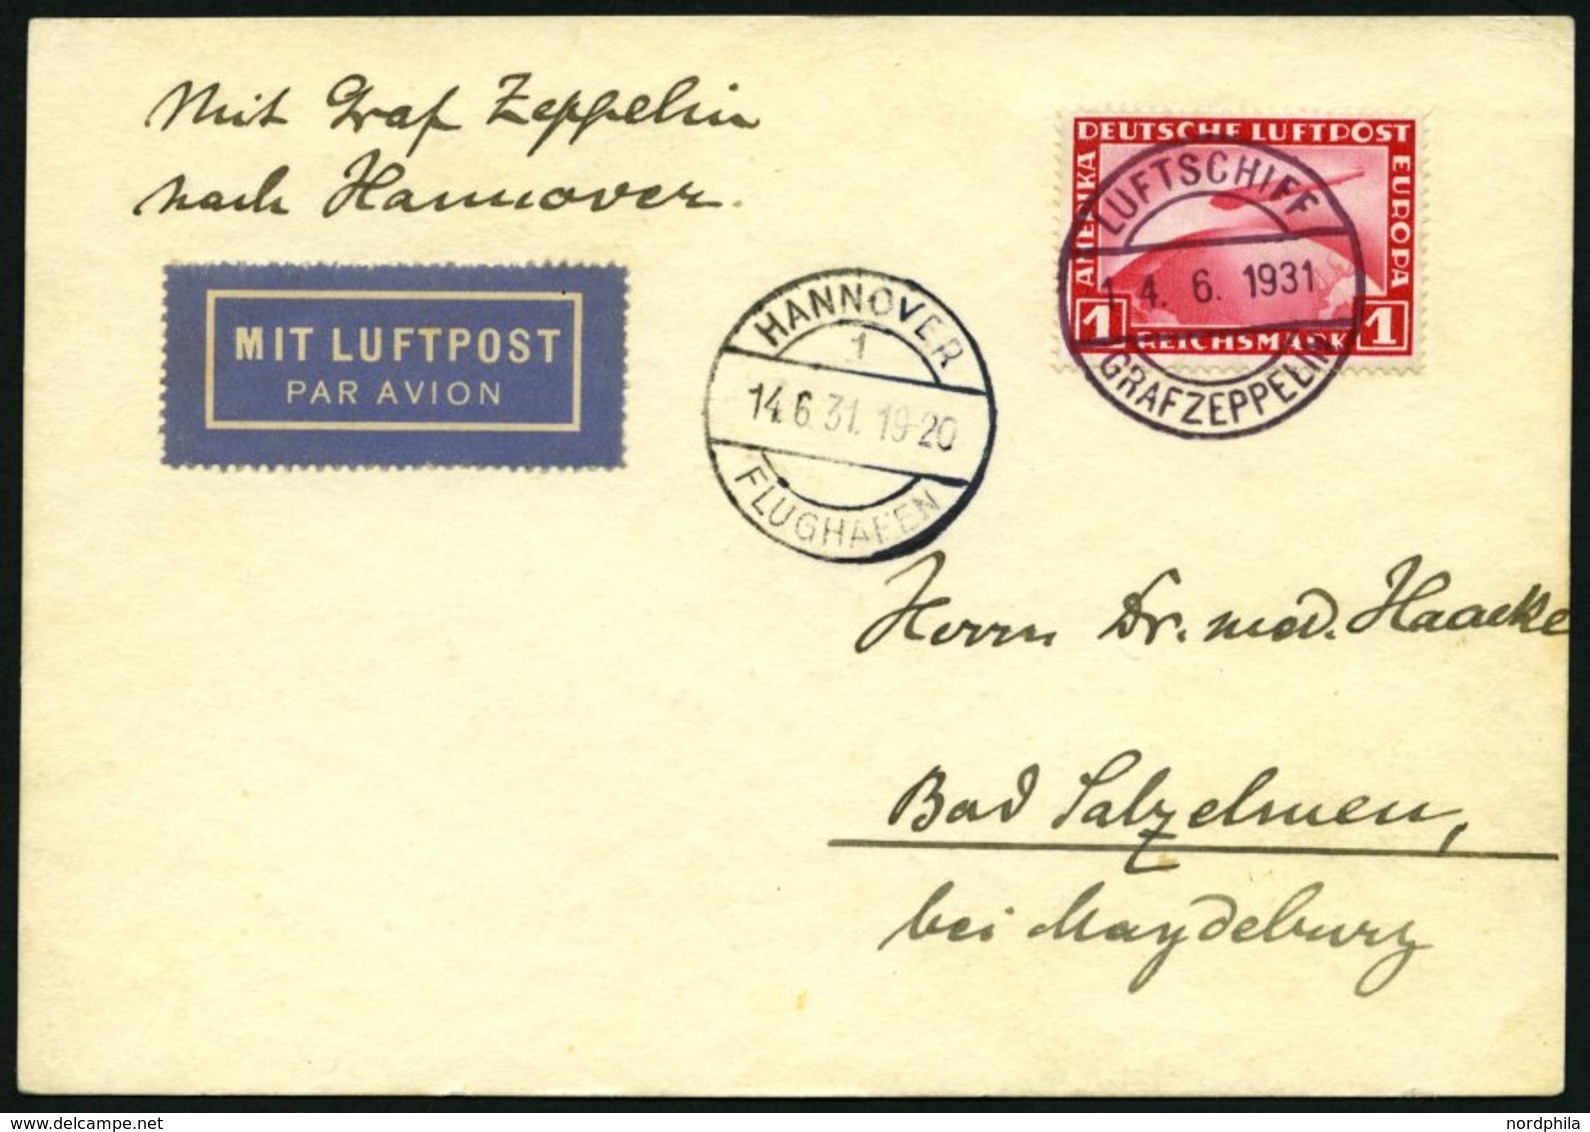 ZEPPELINPOST 111Ab BRIEF, 1931, Fahrt Nach Hannover, Bordpost, Frankiert Mit 1 RM, Prachtkarte - Zeppeline